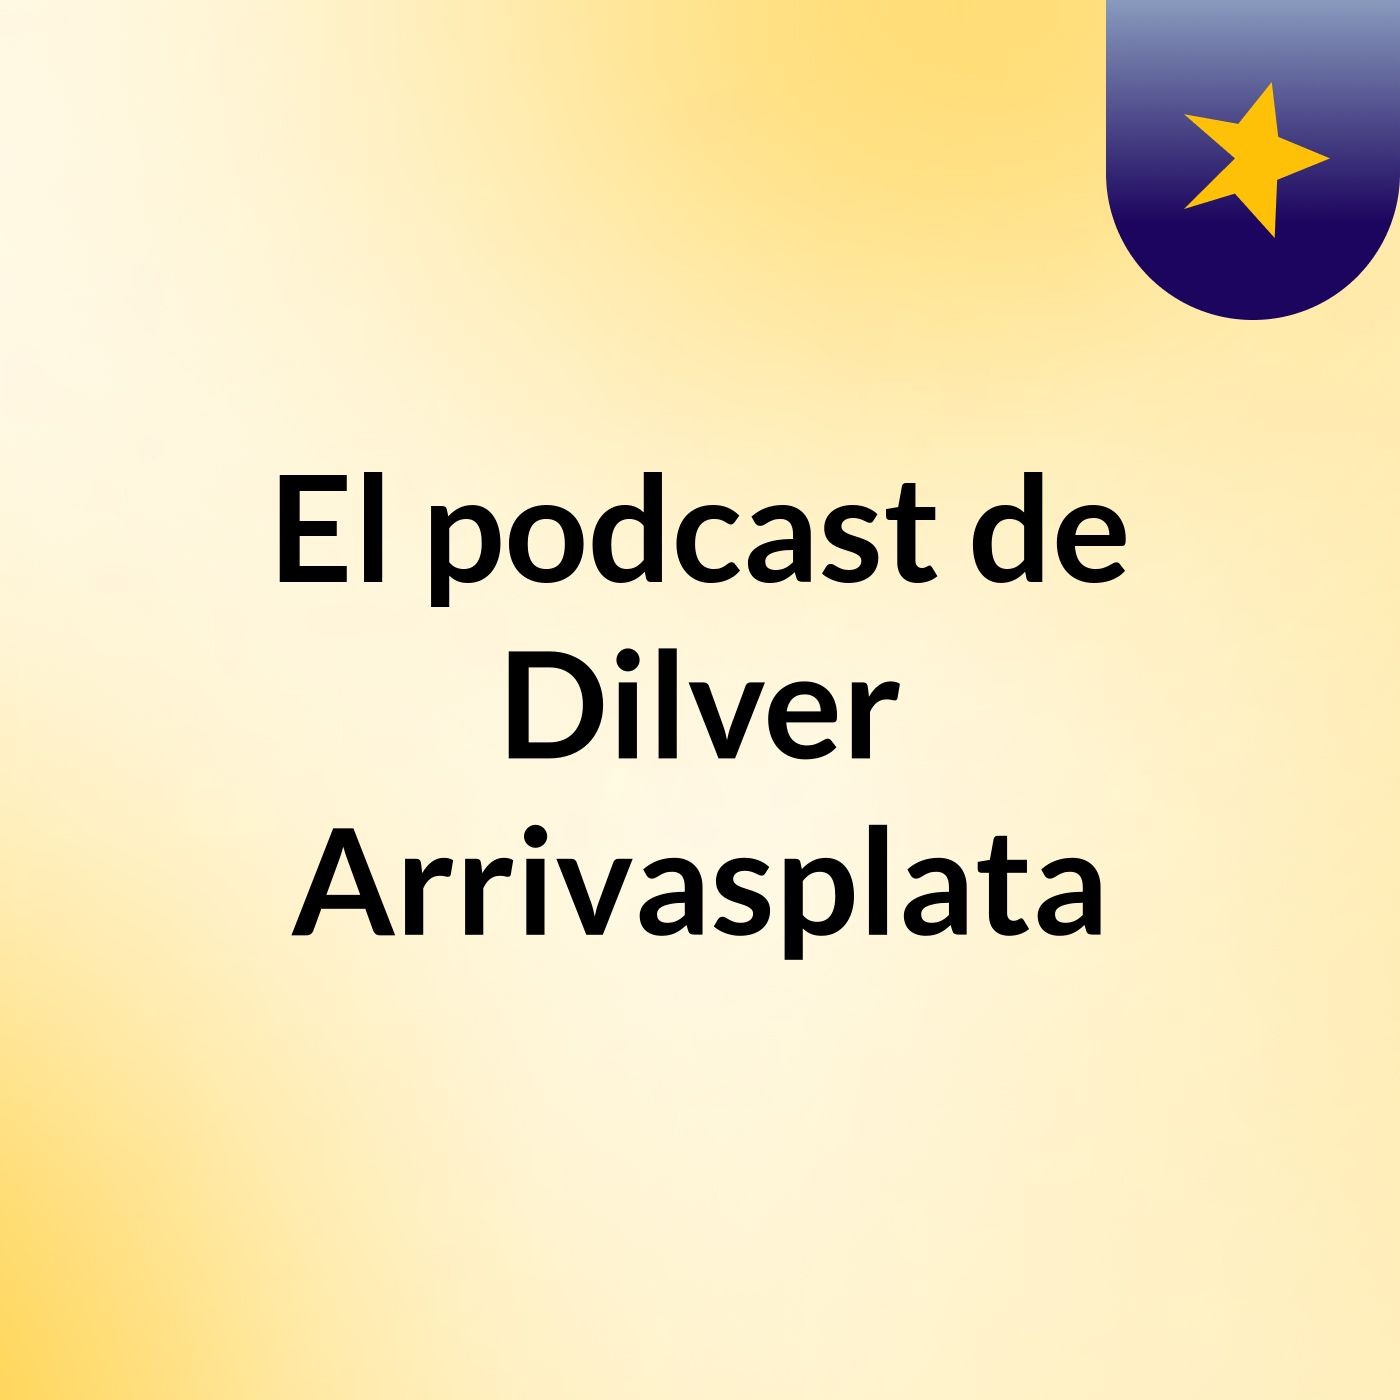 El podcast de Dilver Arrivasplata